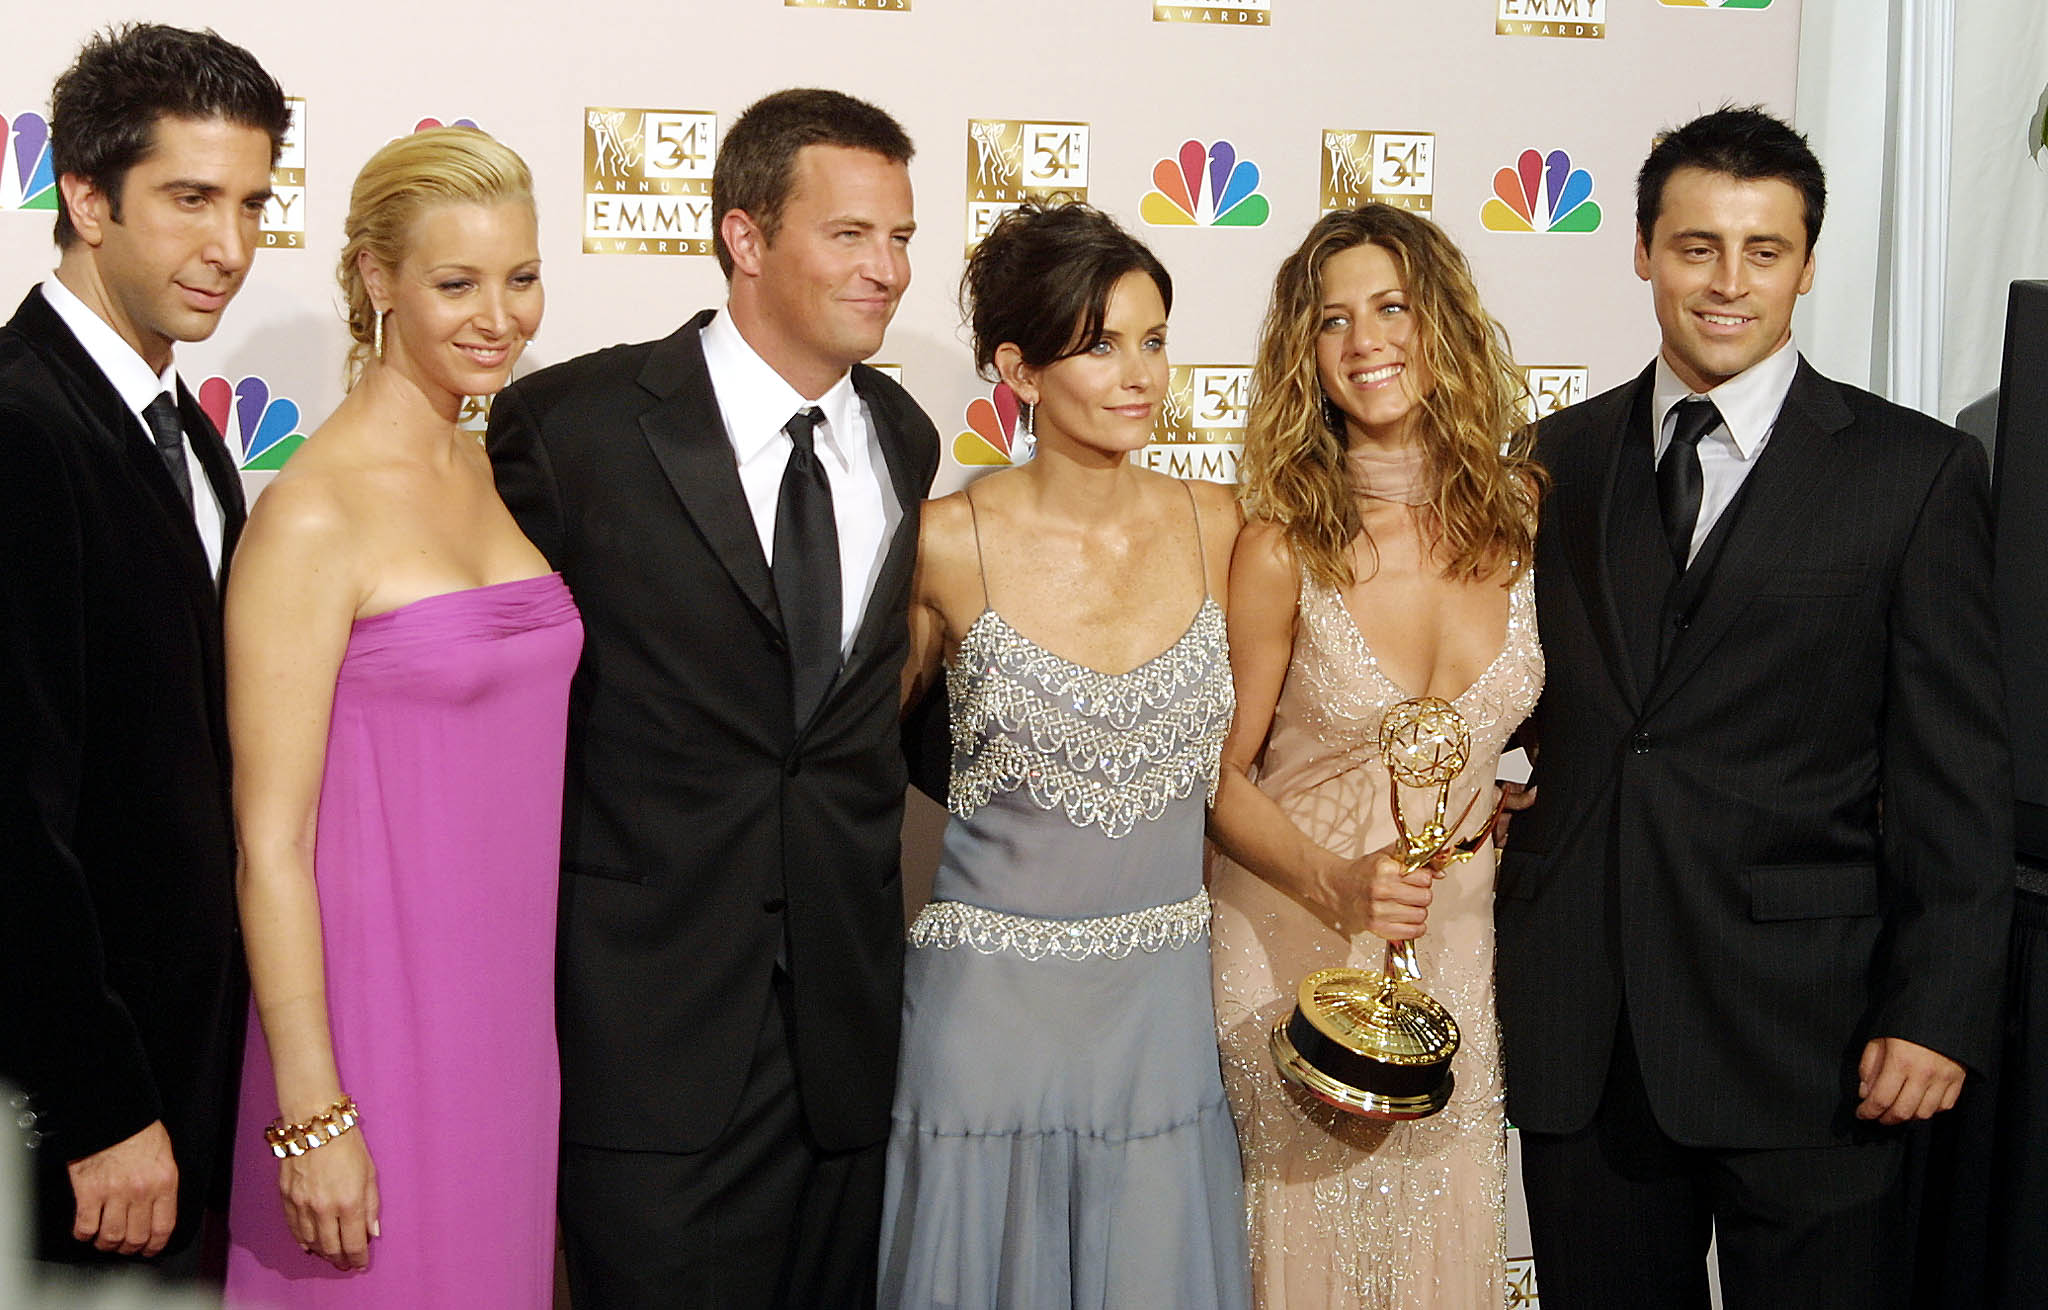 El elenco de la serie "Friends", David Schwimmer, Lisa Kudrow, Mathew Perry, Courtney Cox Arquette, Jennifer Aniston y Matt LeBlanc, se reunirá en un especial televisivo para la plataforma de streaming de HBO. (Foto Prensa Libre: AFP)